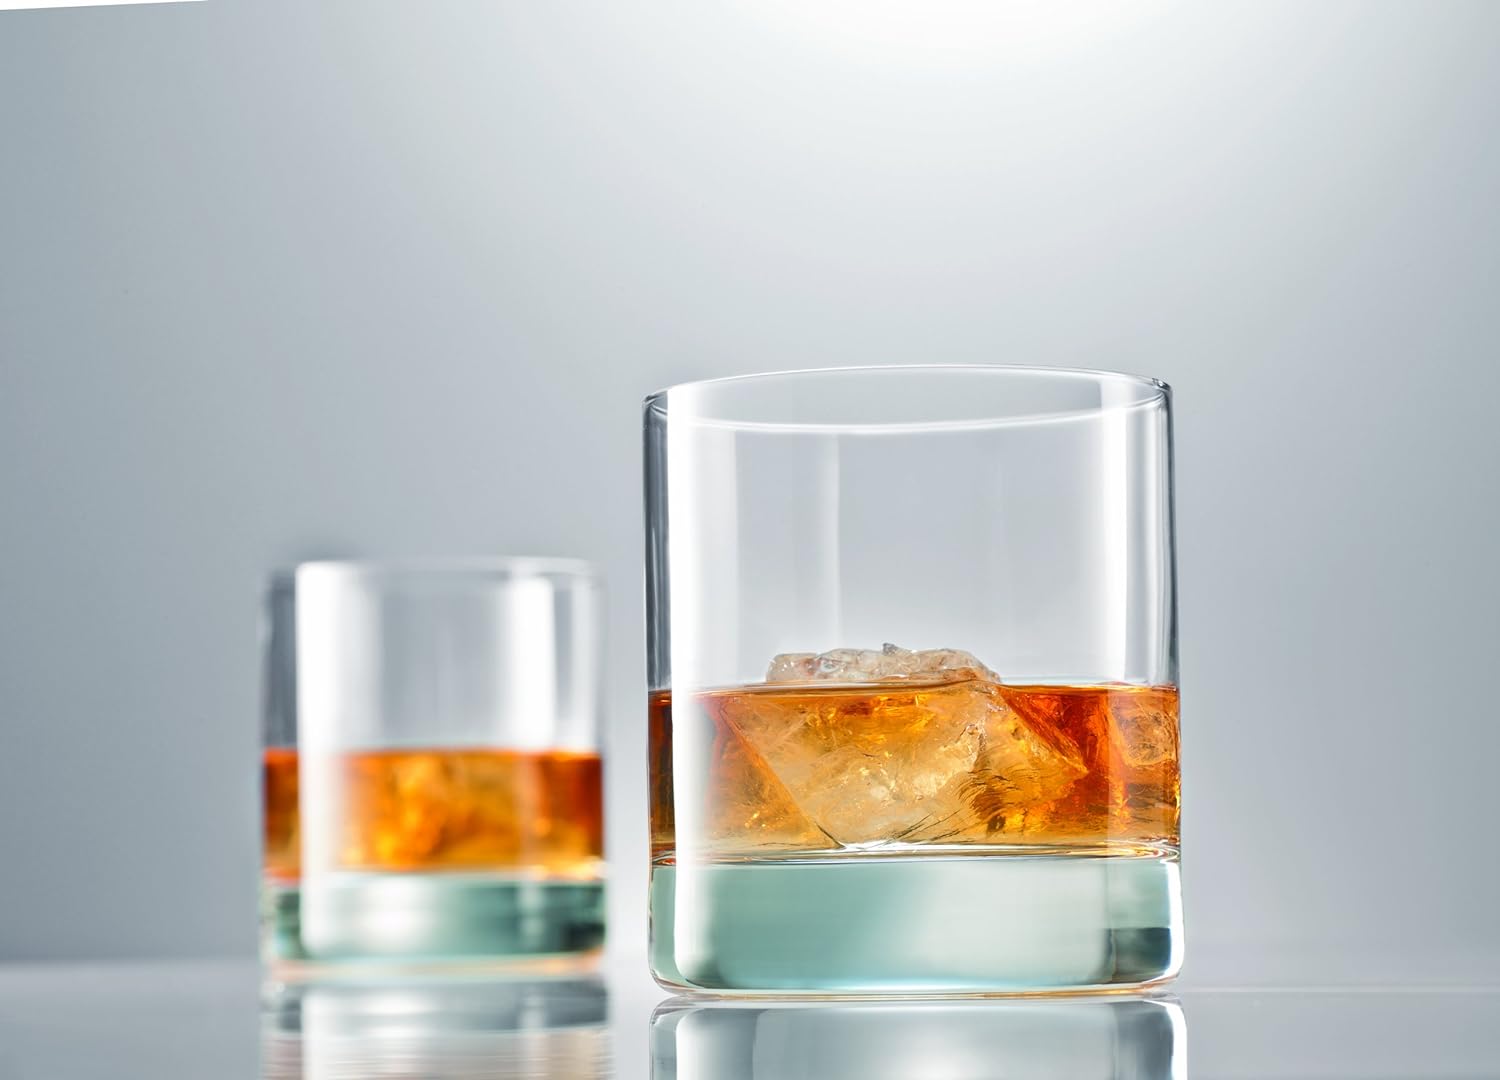 Raye Heavy Base Crystal Whiskey Tasting Glasses Set of 2